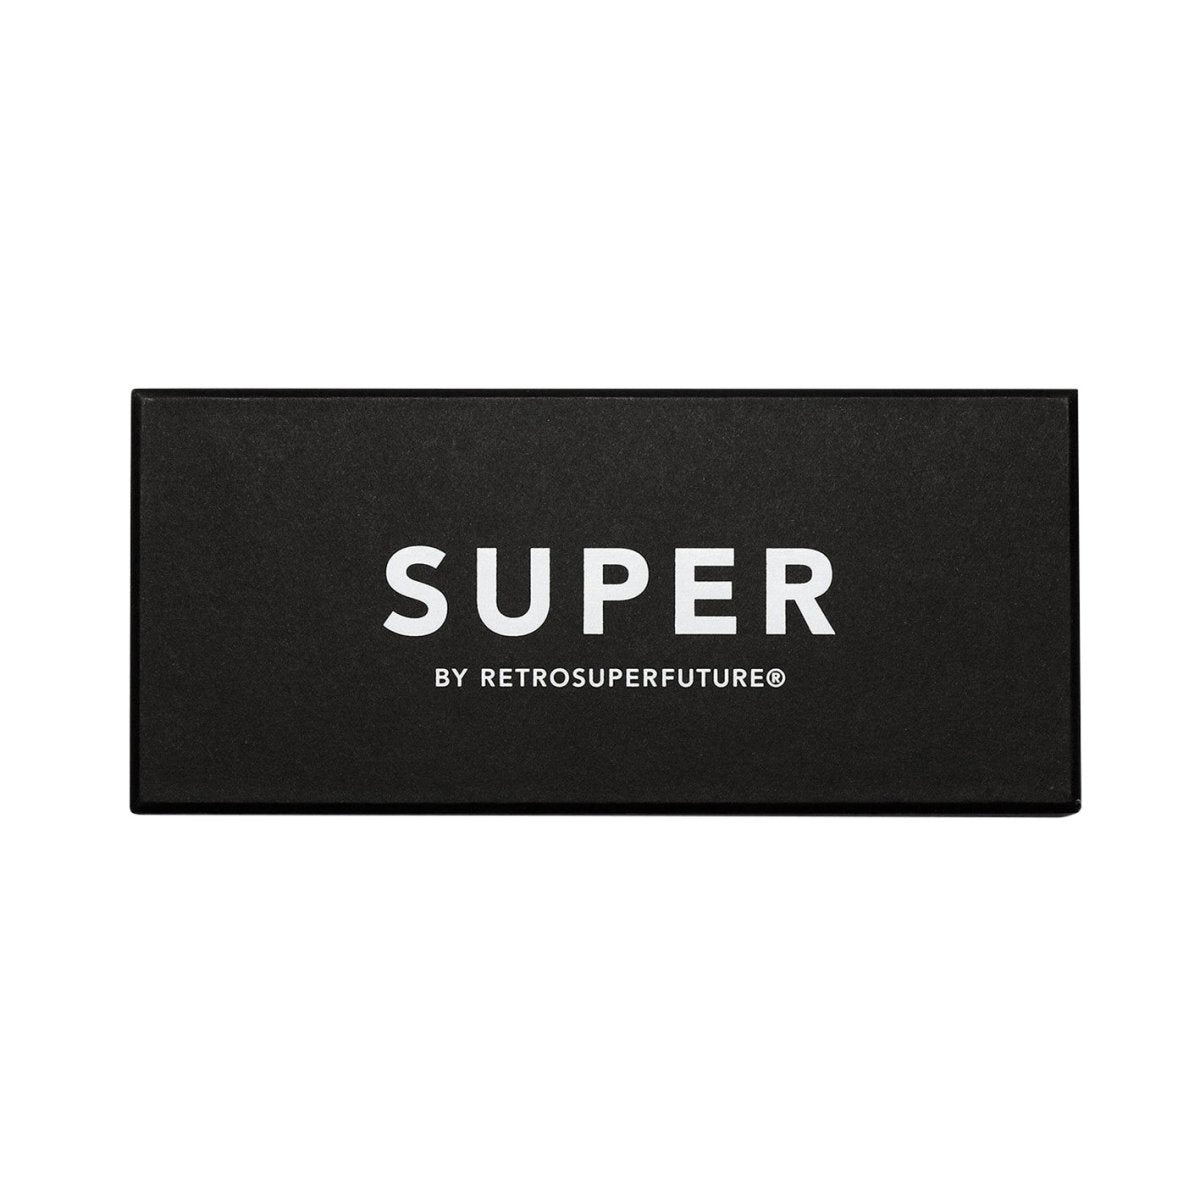 Super by Retrosuperfuture Unico Monochrome (Fade)  - Allike Store